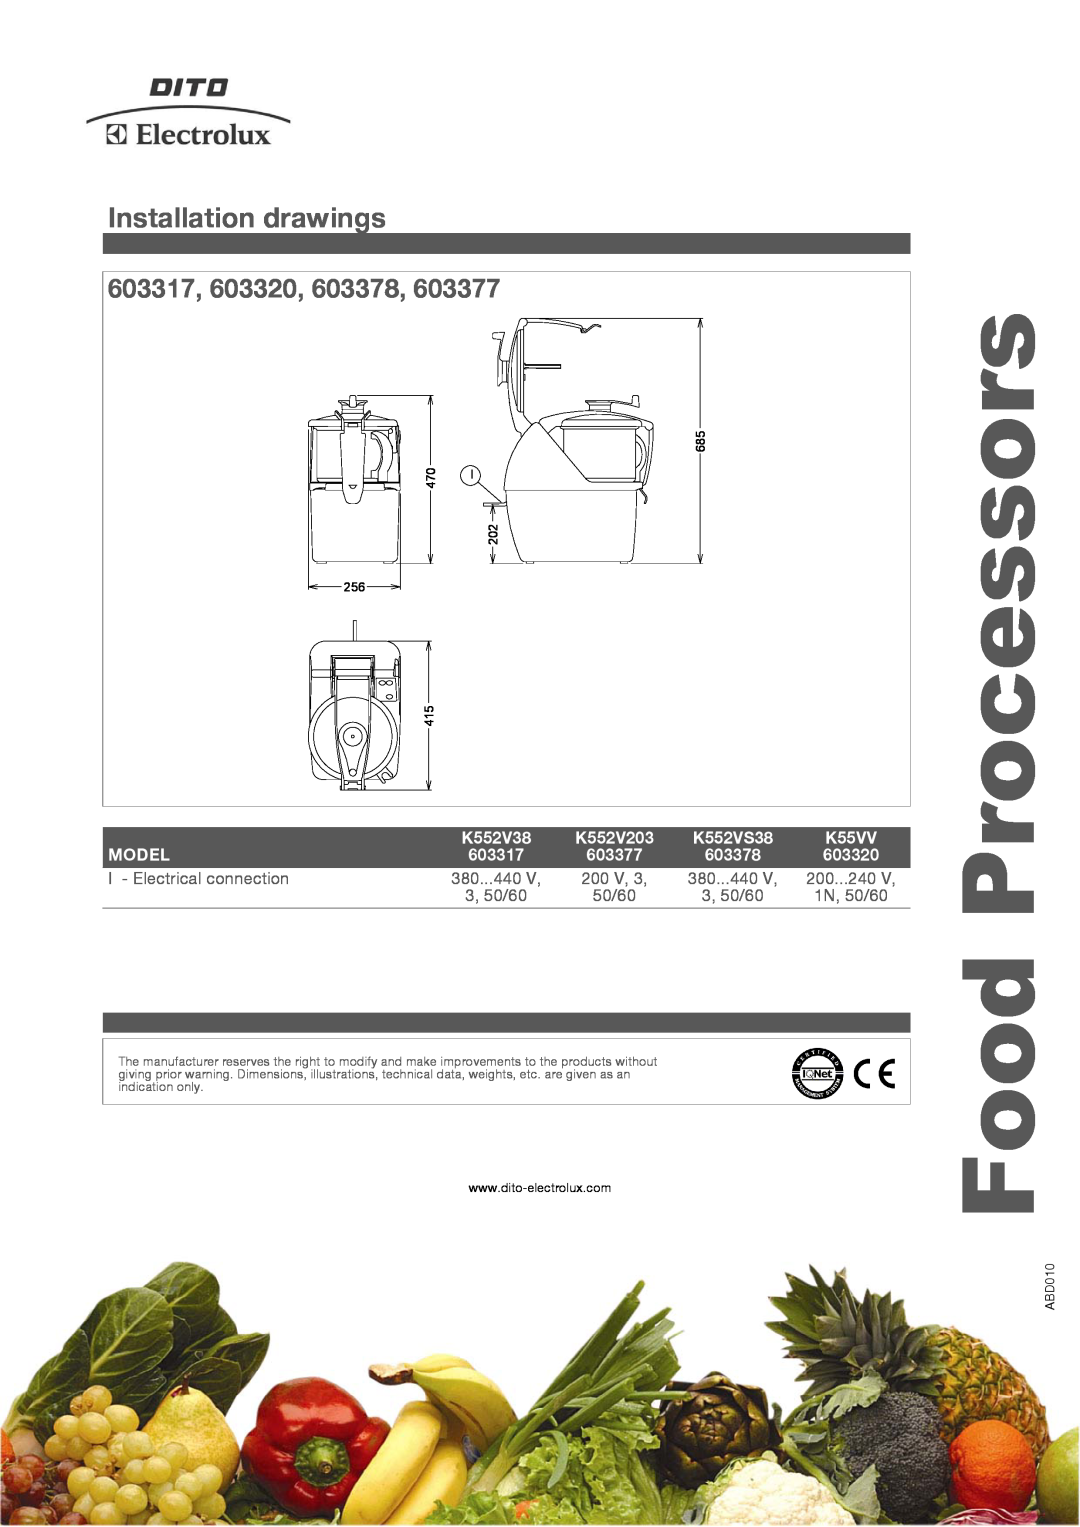 Electrolux K55VV manual Installation drawings, 603317, 603320, 603378, Food Processors, K552V38, K552V203, K552VS38, Model 